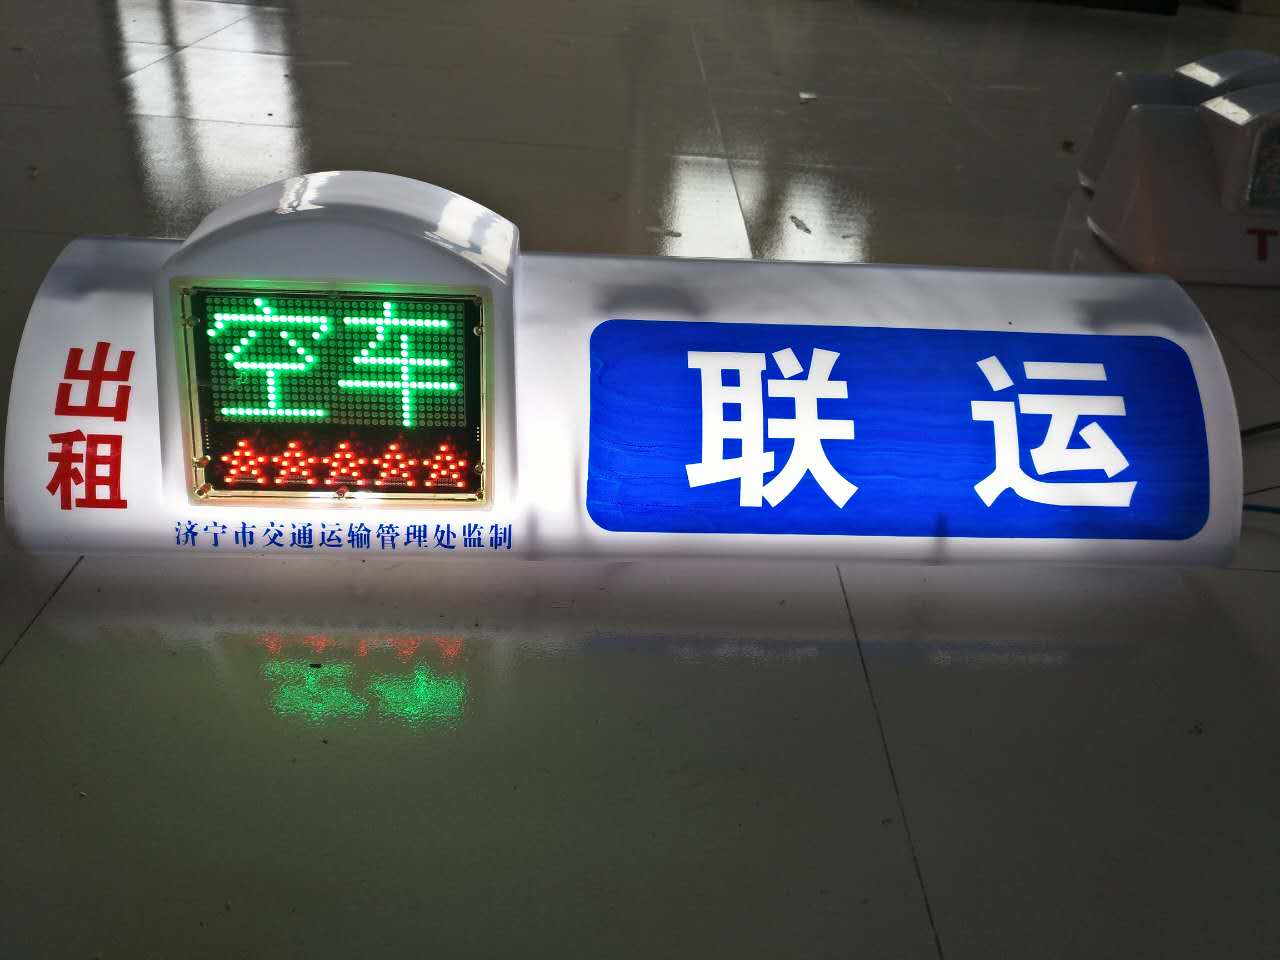 山东济宁出租车LED顶灯的士高亮LED显示屏德威品牌上市